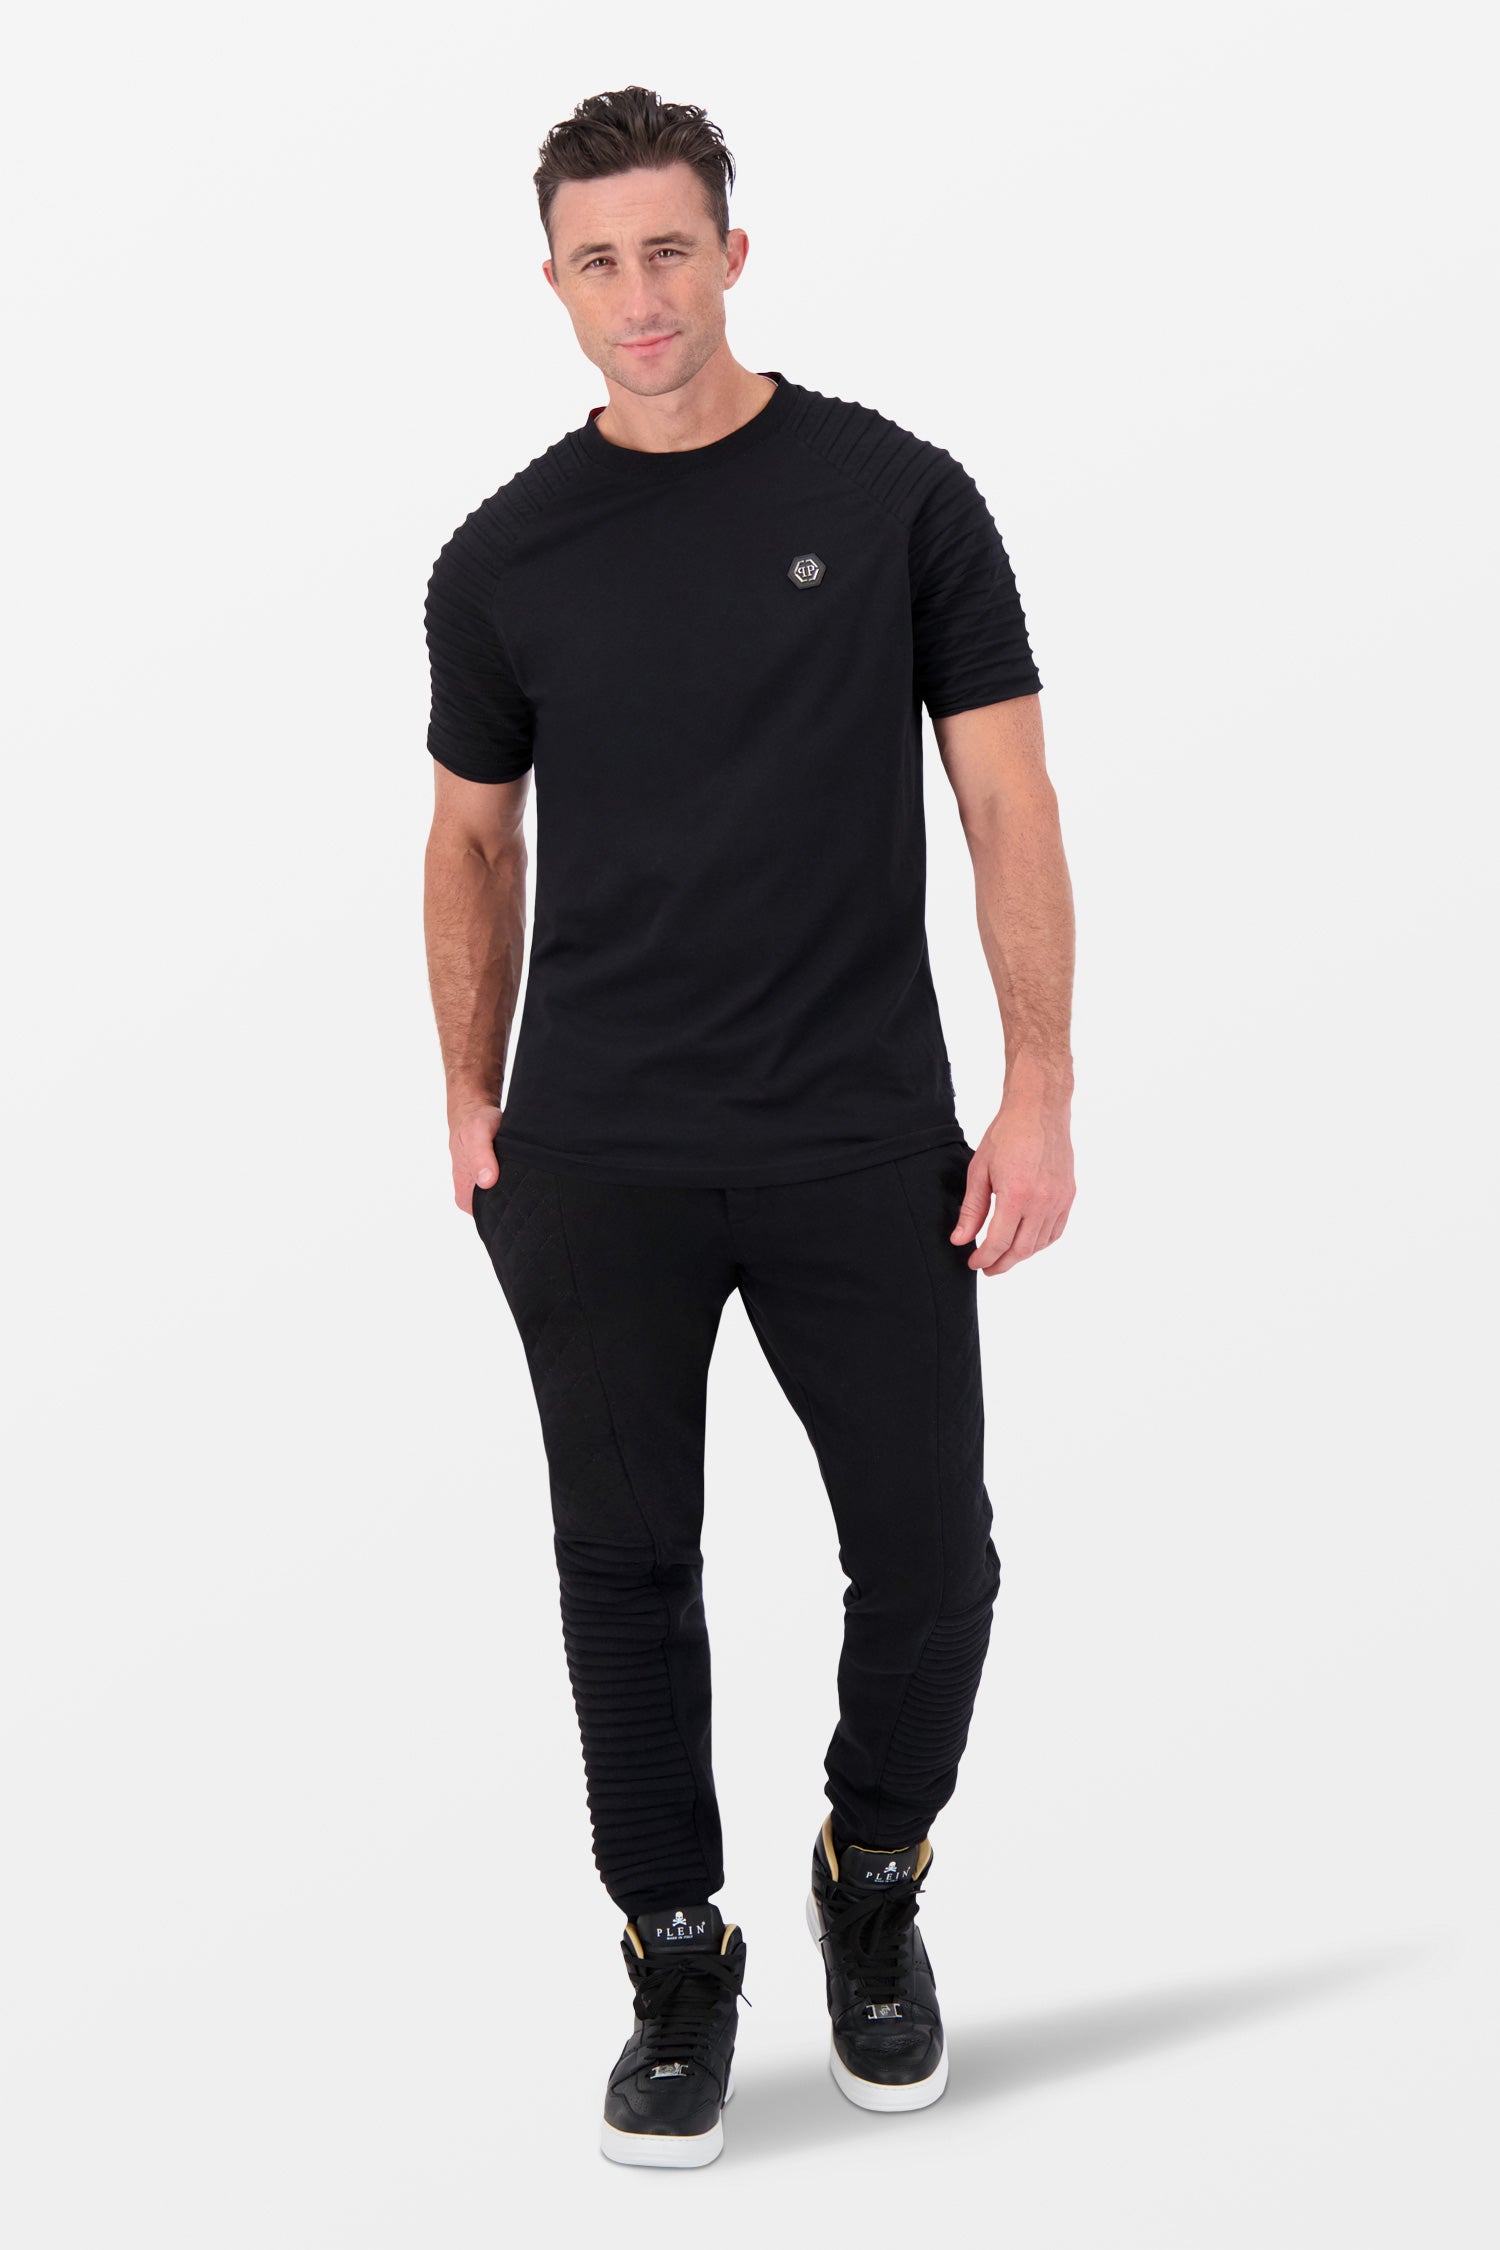 Philipp Plein Black Round Neck SS T-Shirt